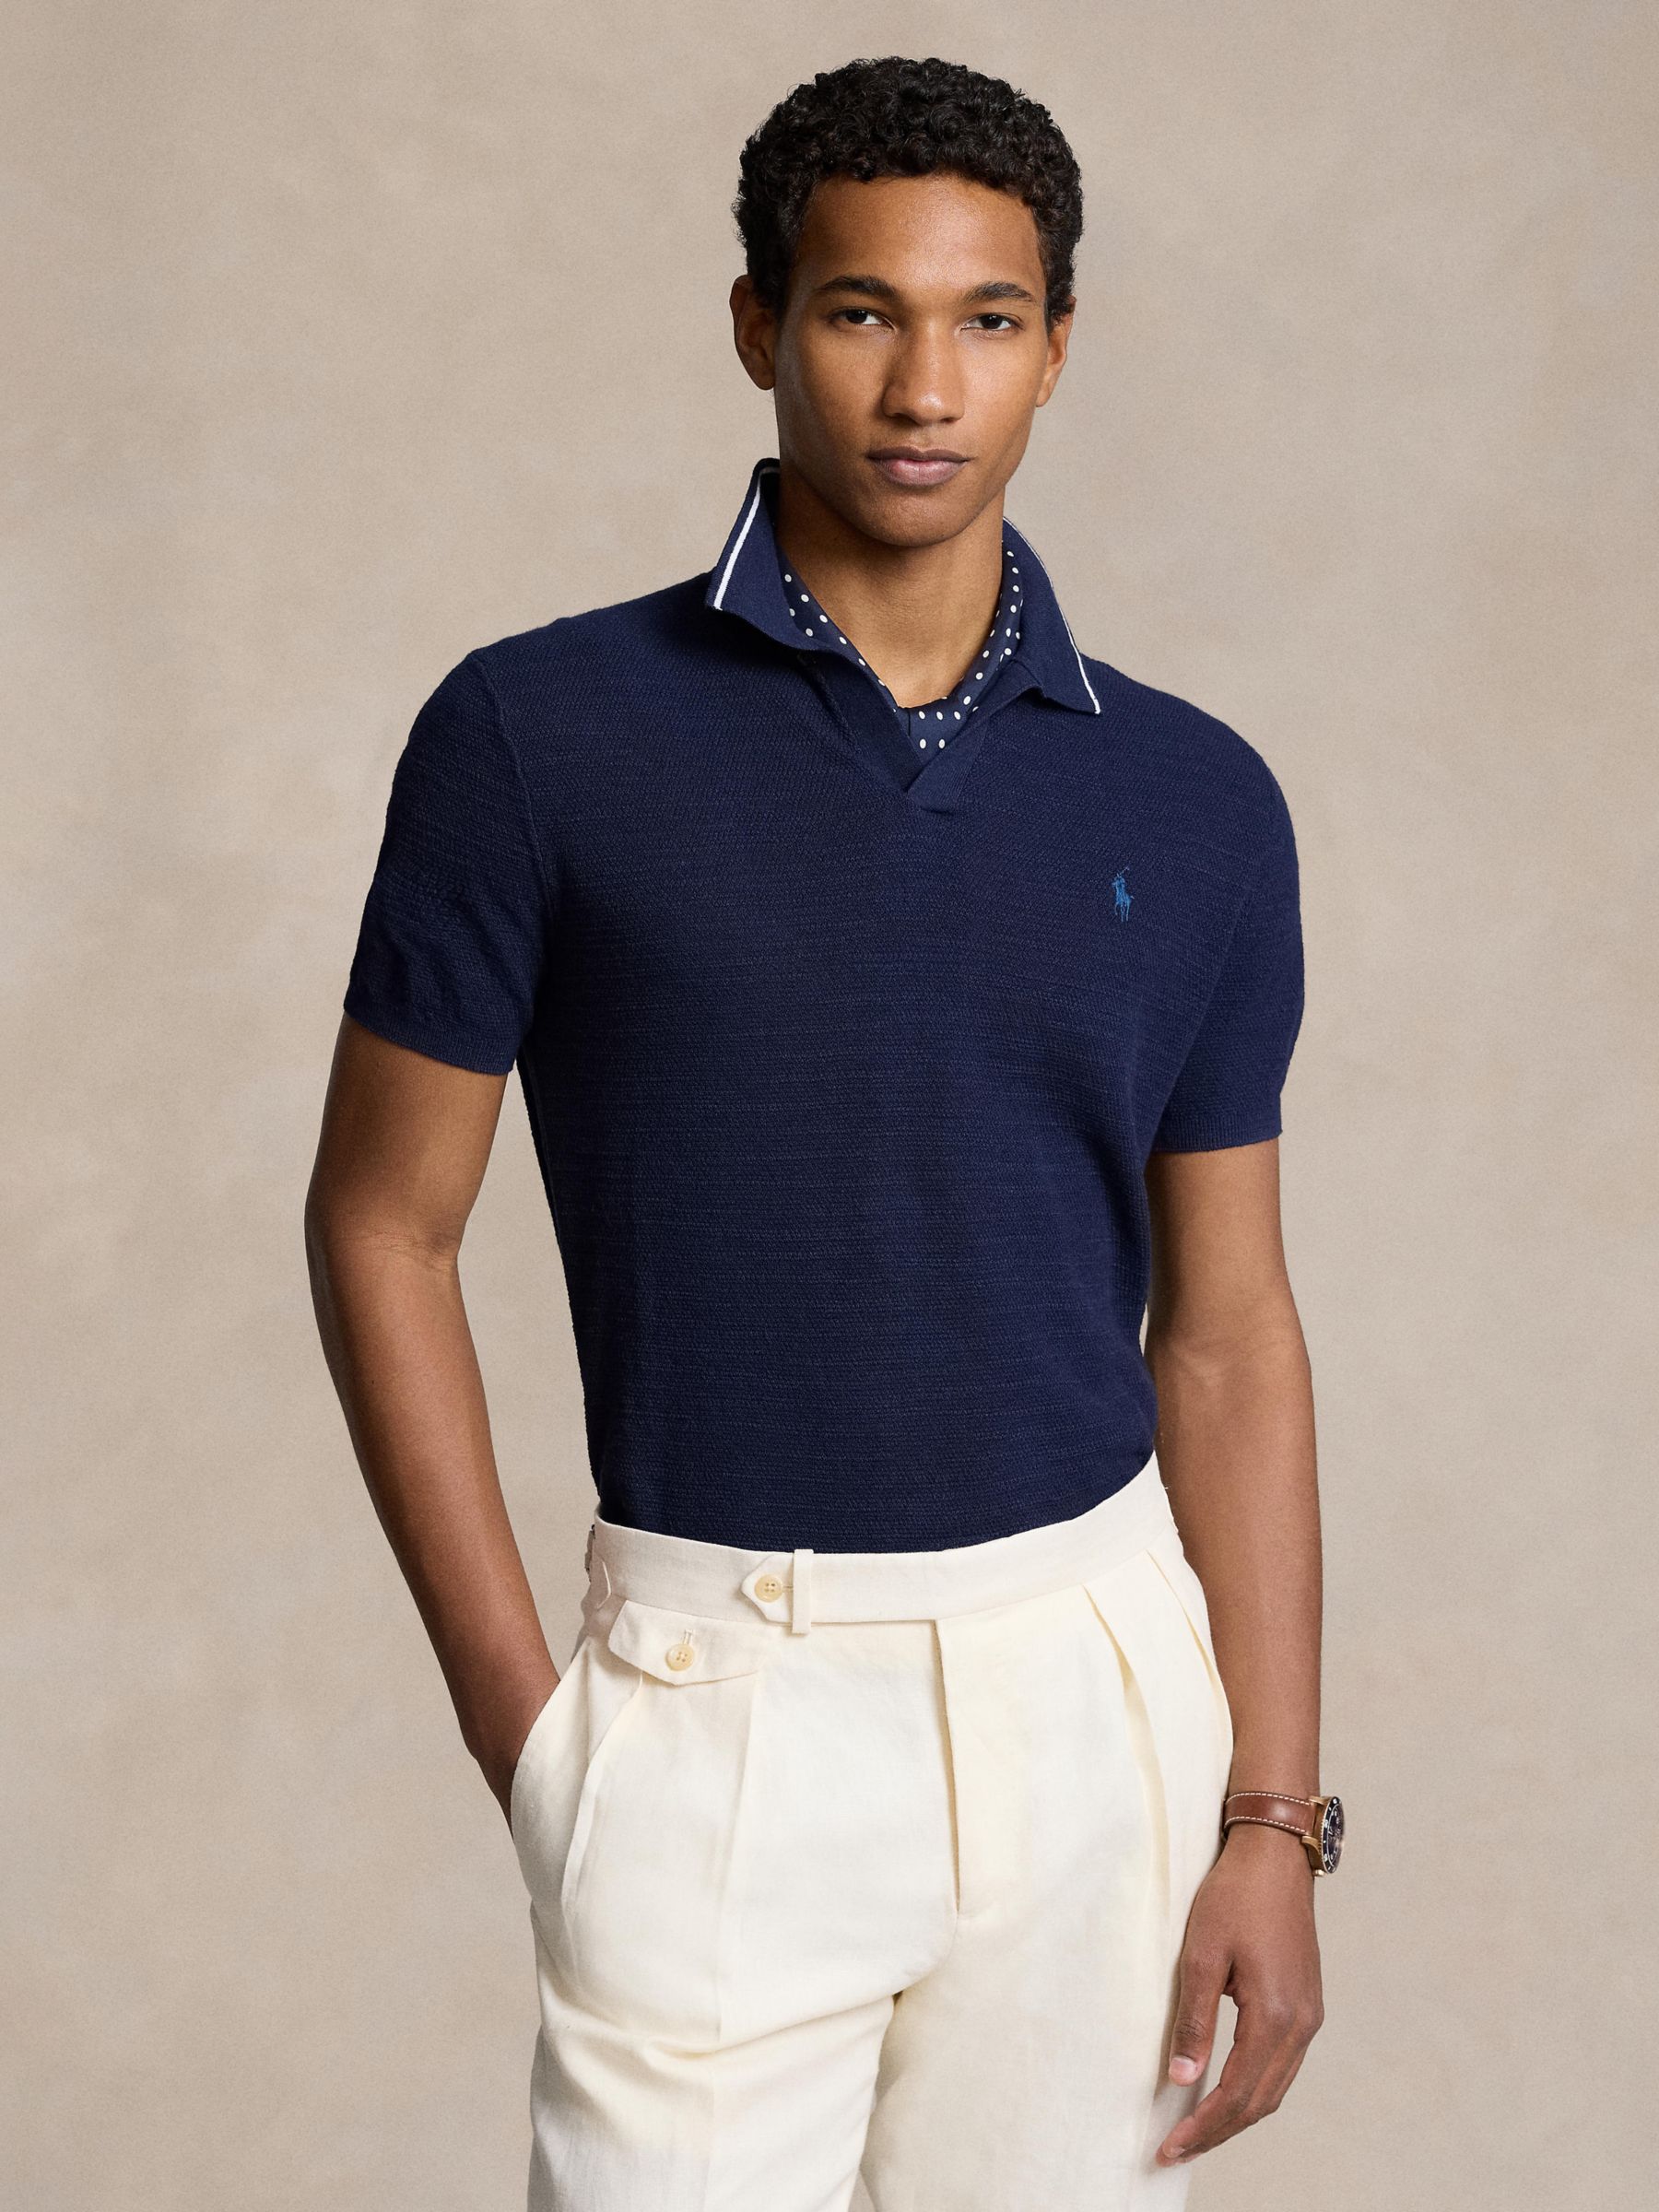 Ralph Lauren Linen Blend Polo Shirt, Bright Navy, M